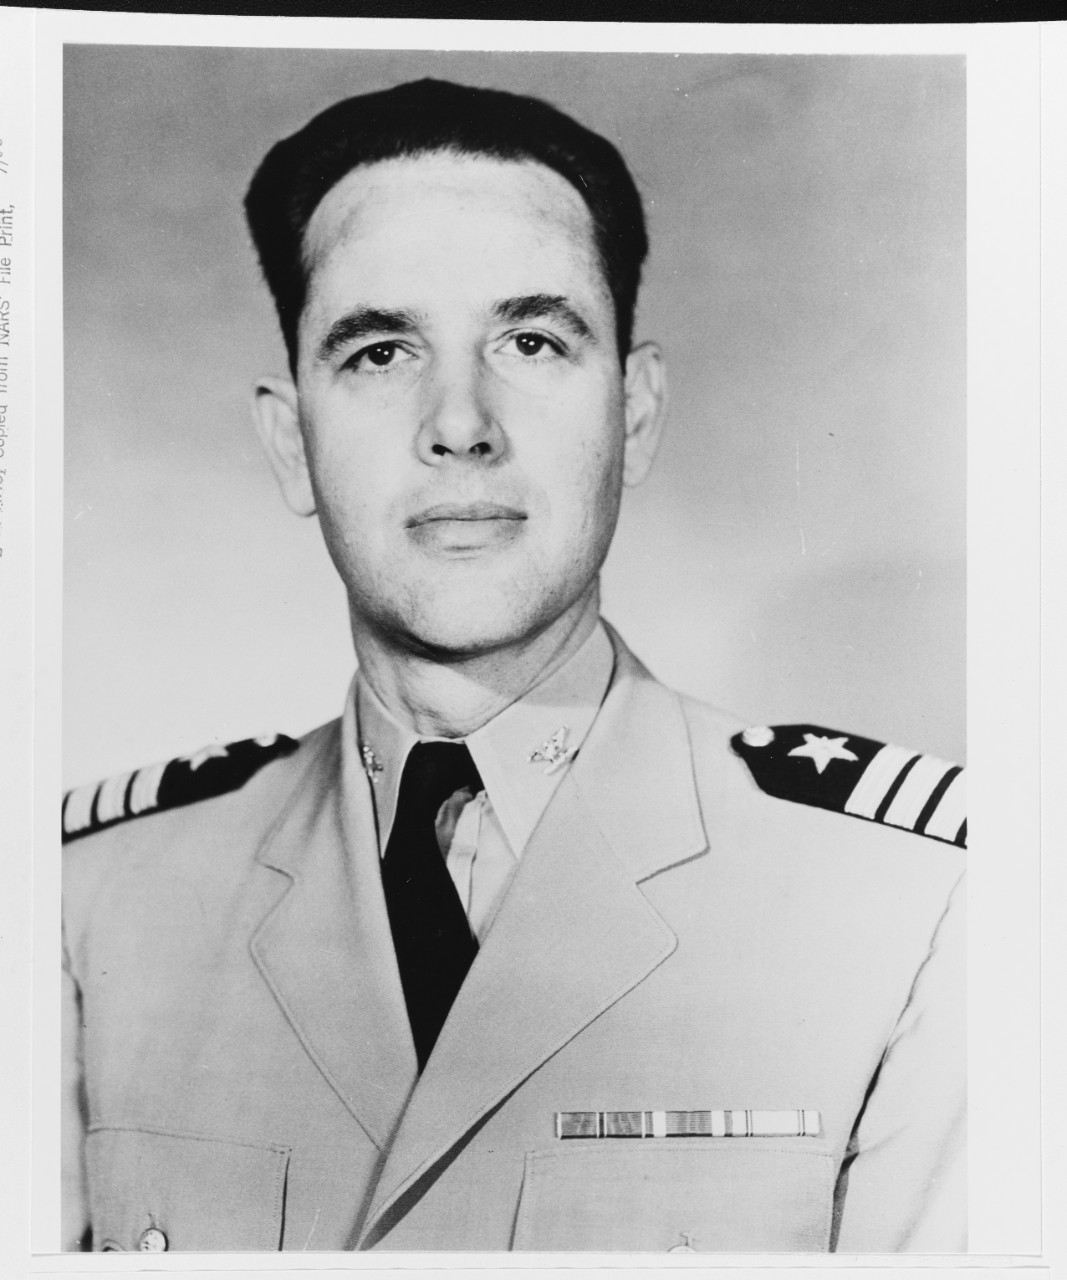 Captain Bradley F. Bennett, USN